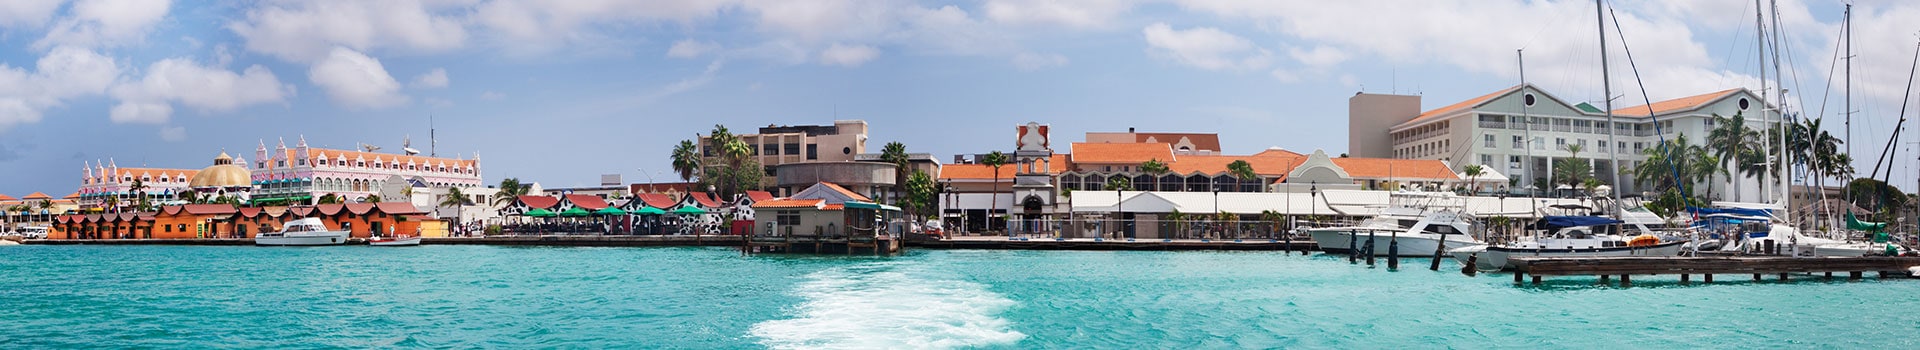 Panama city - Oranjestad